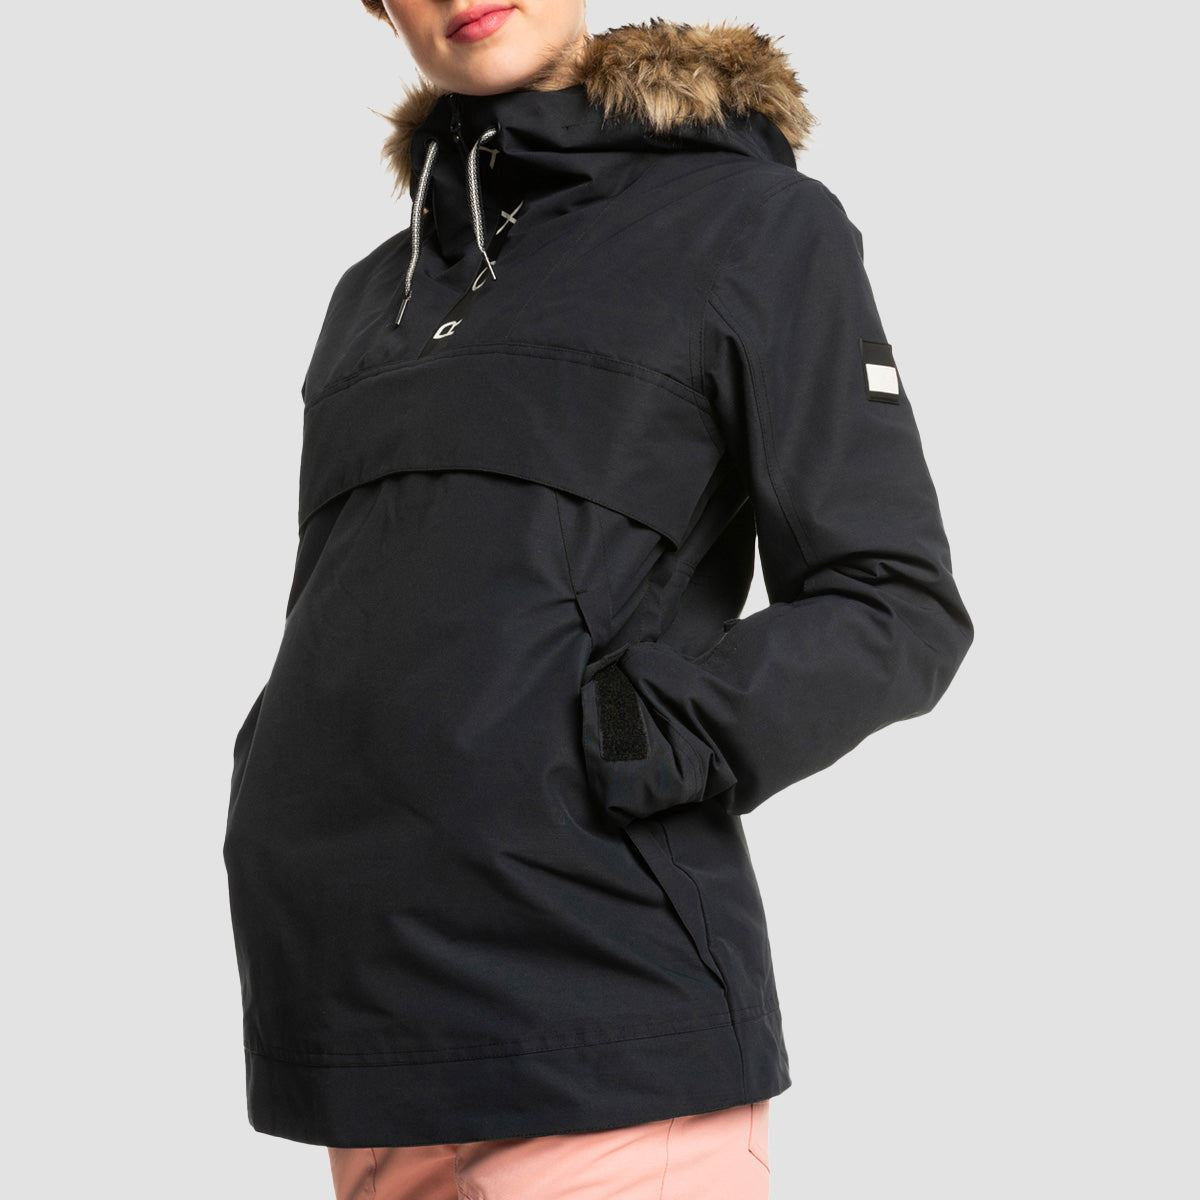 Roxy Shelter 10K Pullover Snow Jacket True Black - Womens